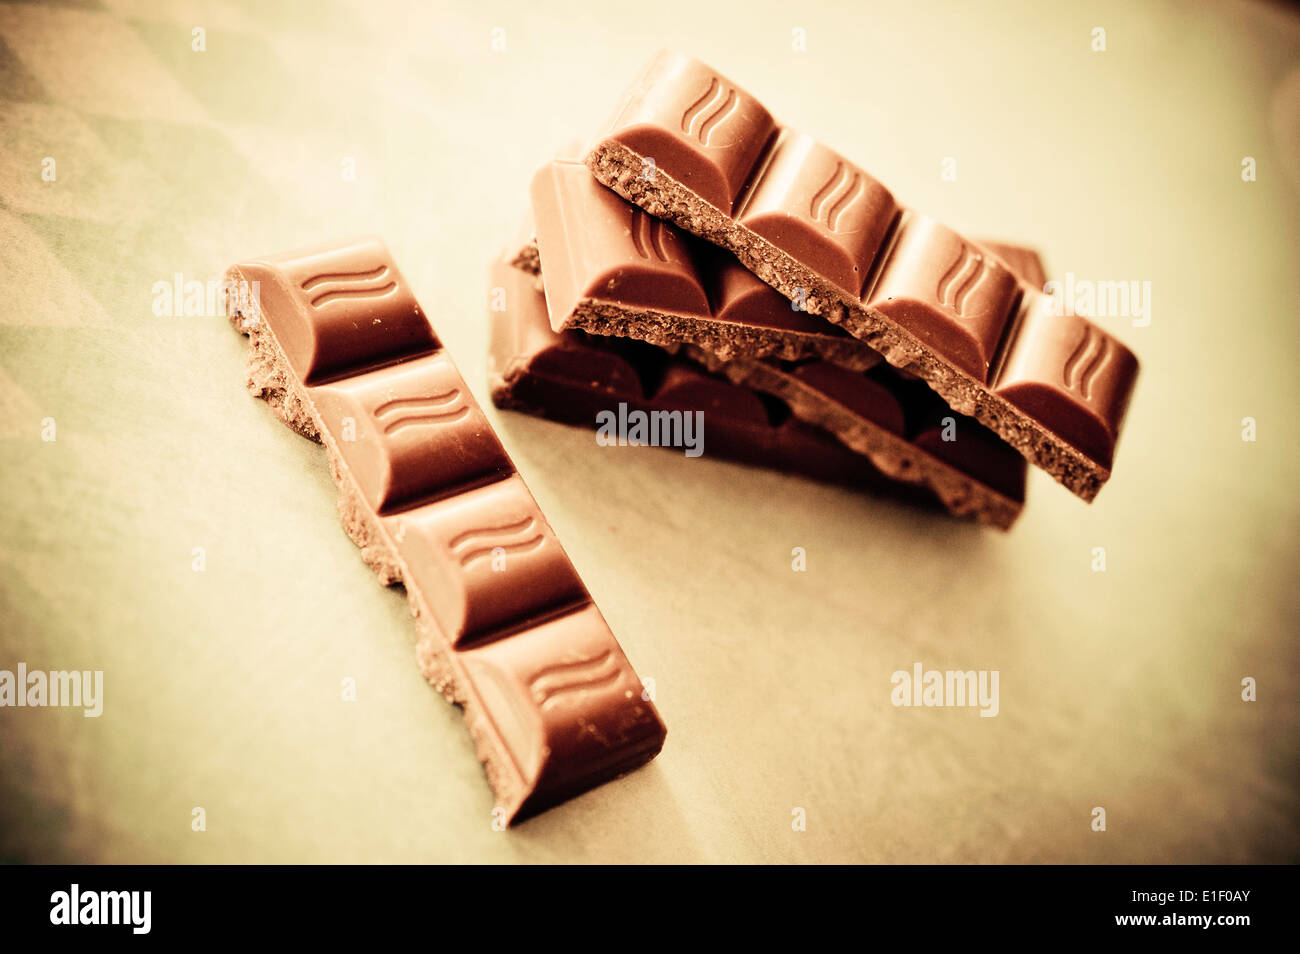 chocolate bars Stock Photo